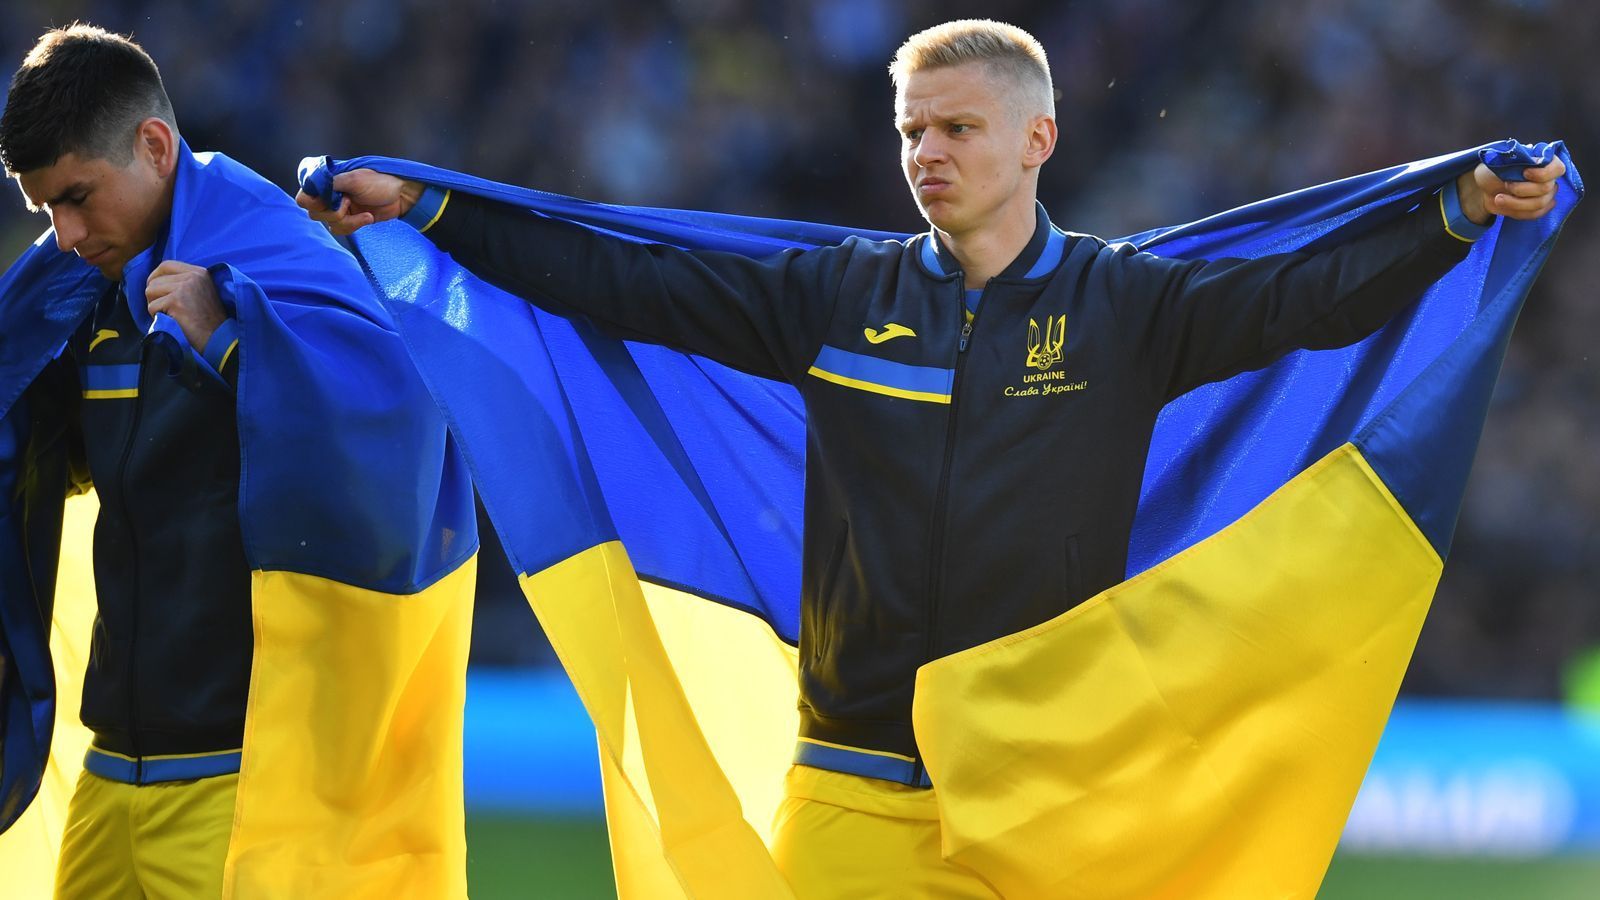 
                <strong>Zinchenko und Co. kamen mit ukrainischer Flagge aufs Feld</strong><br>
                ... der Profi von Manchester City stand in der Startelf der Gäste, die in die ukrainische Flagge gehüllt auf das Spielfeld kamen. 
              